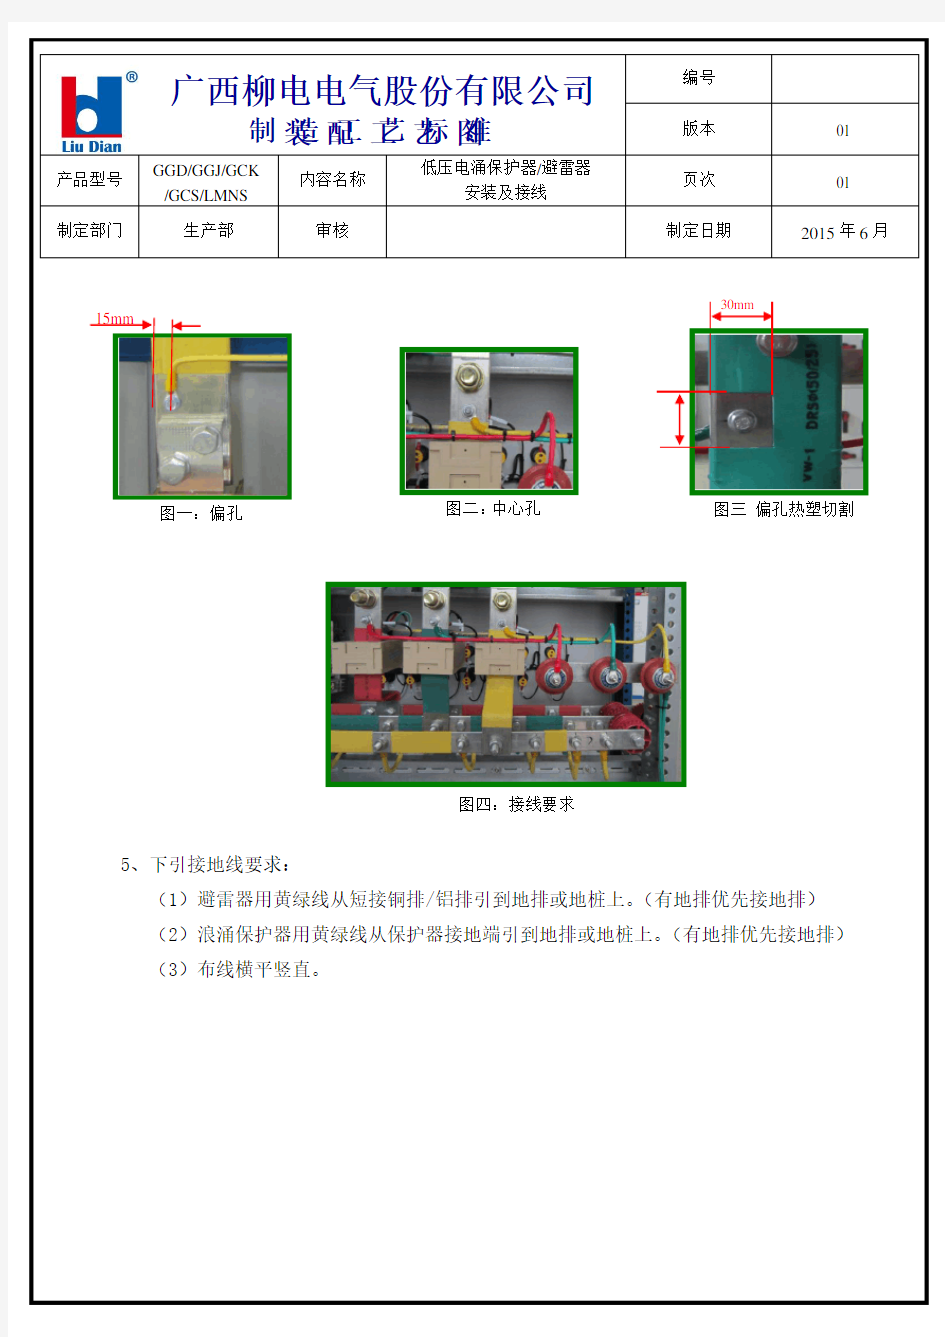 低压电涌保护器避雷器安装及接线